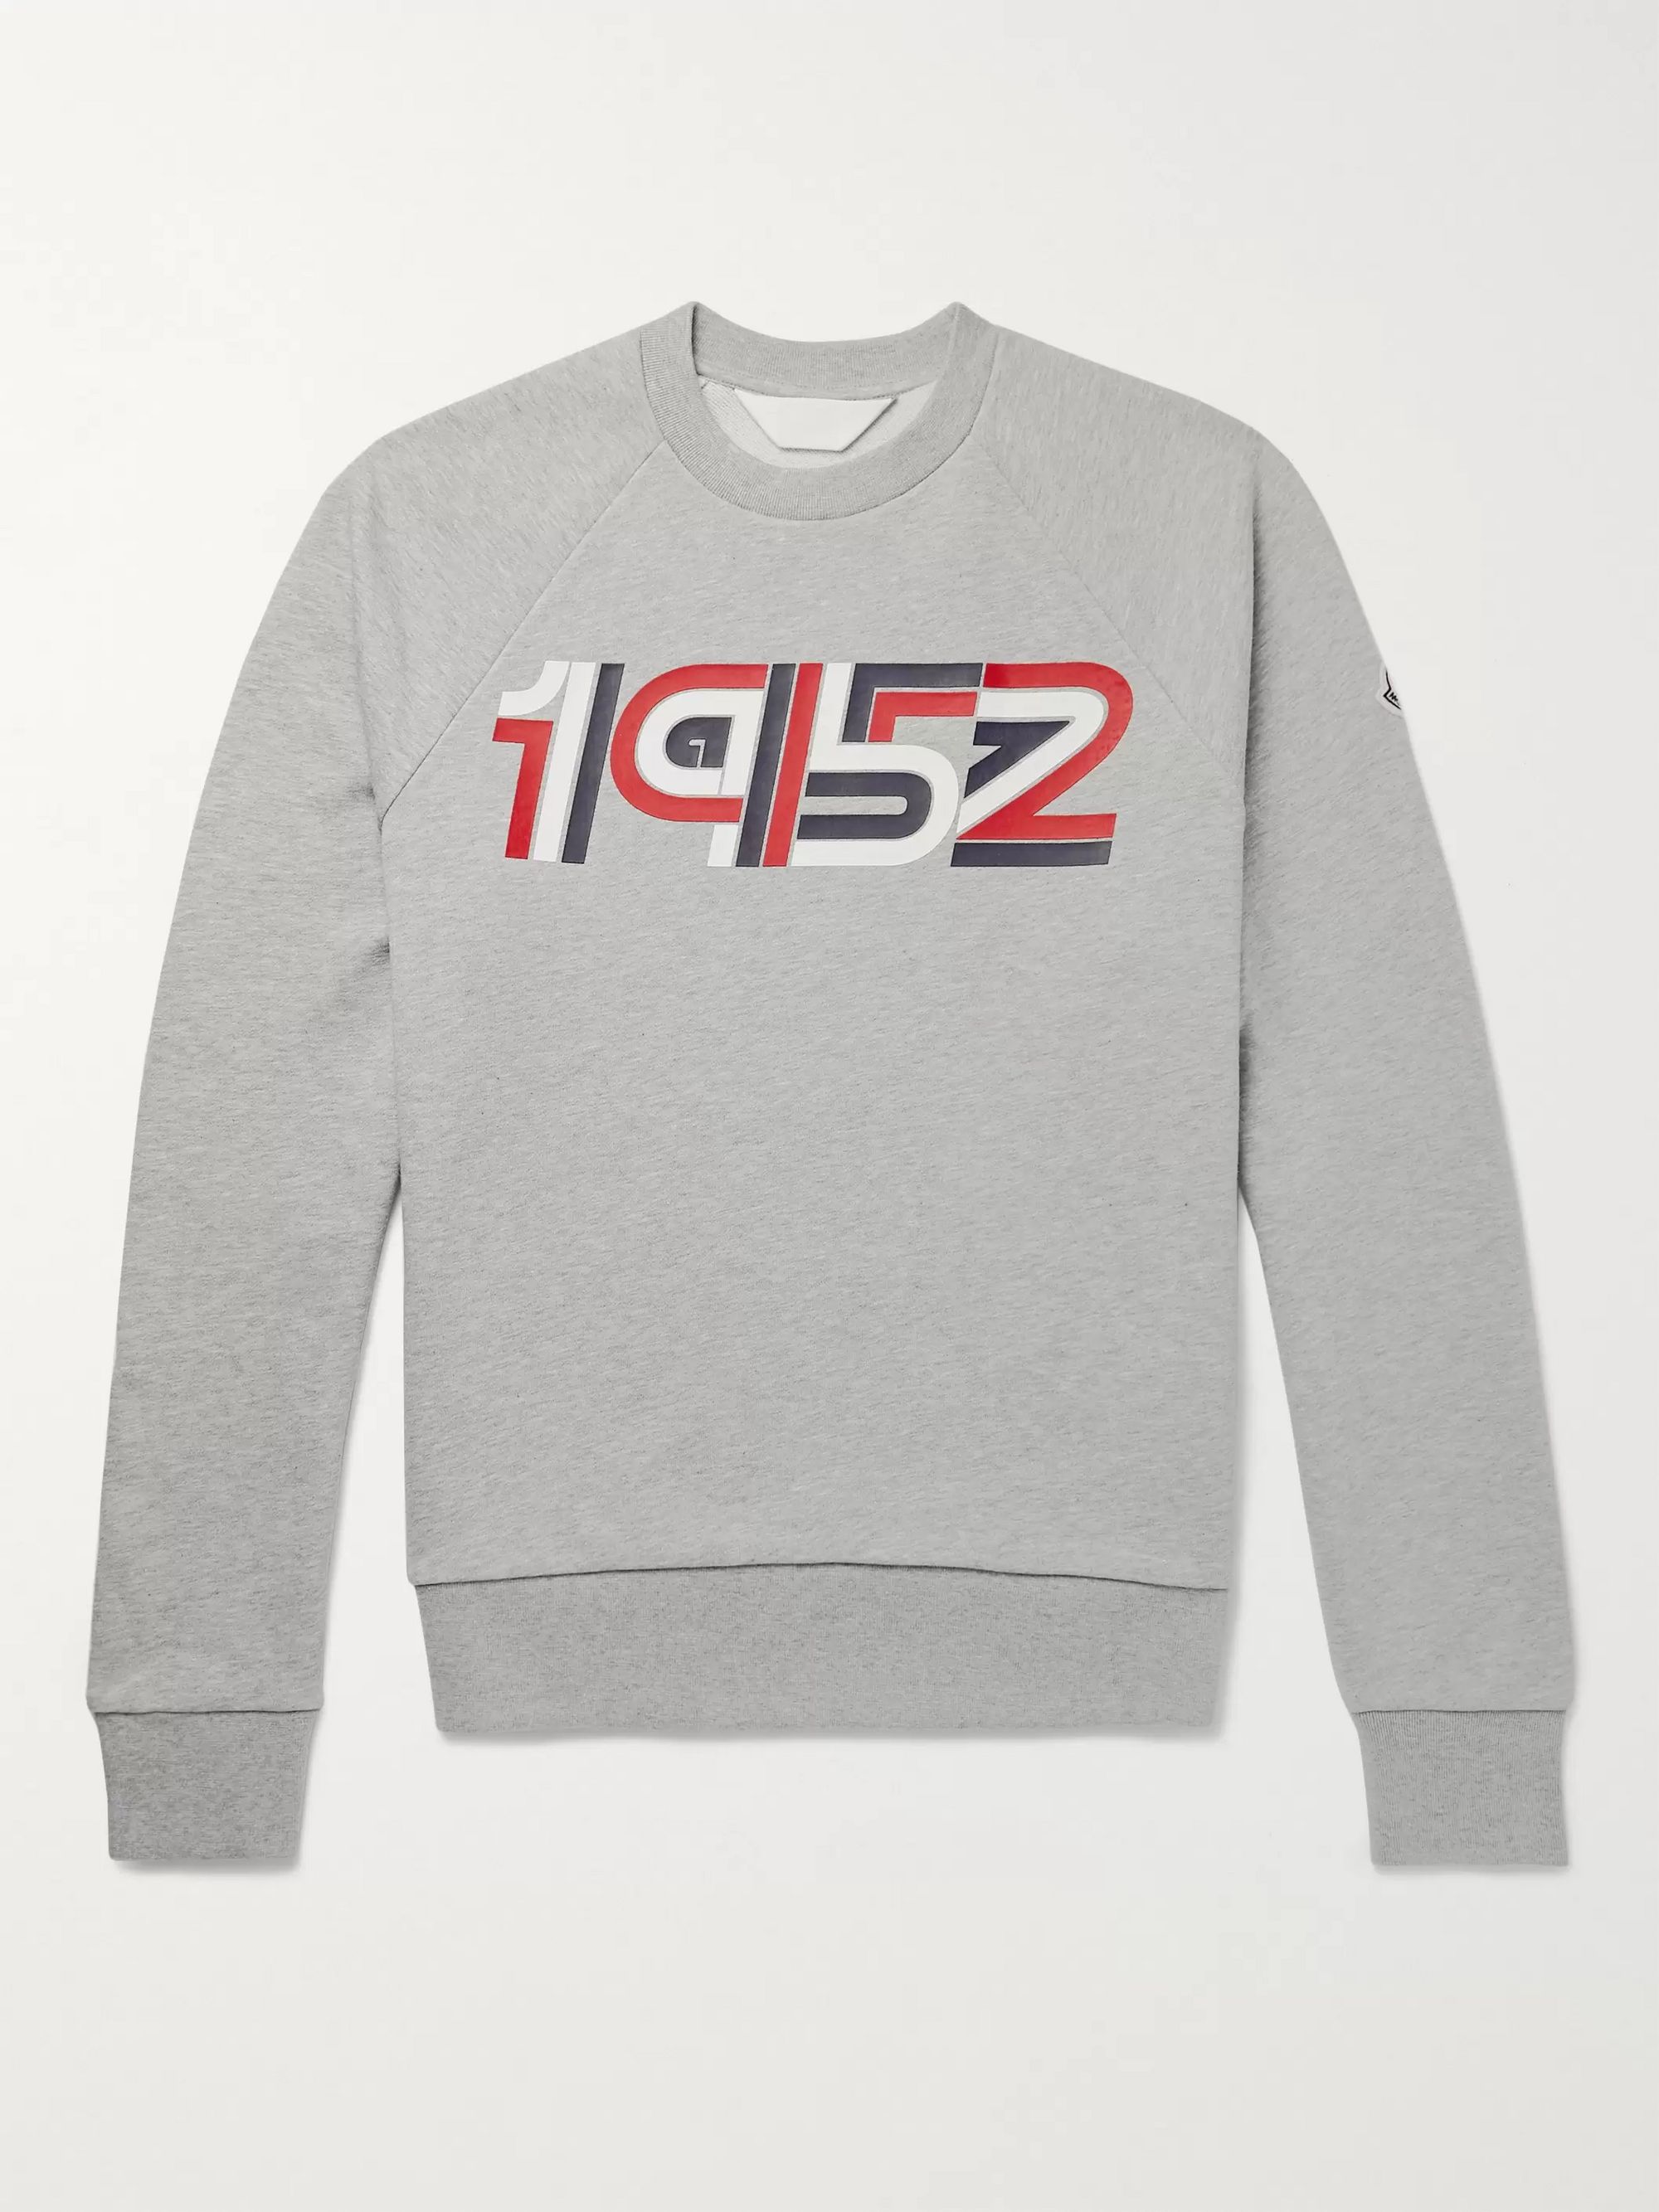 2 moncler 1952 sweatshirt